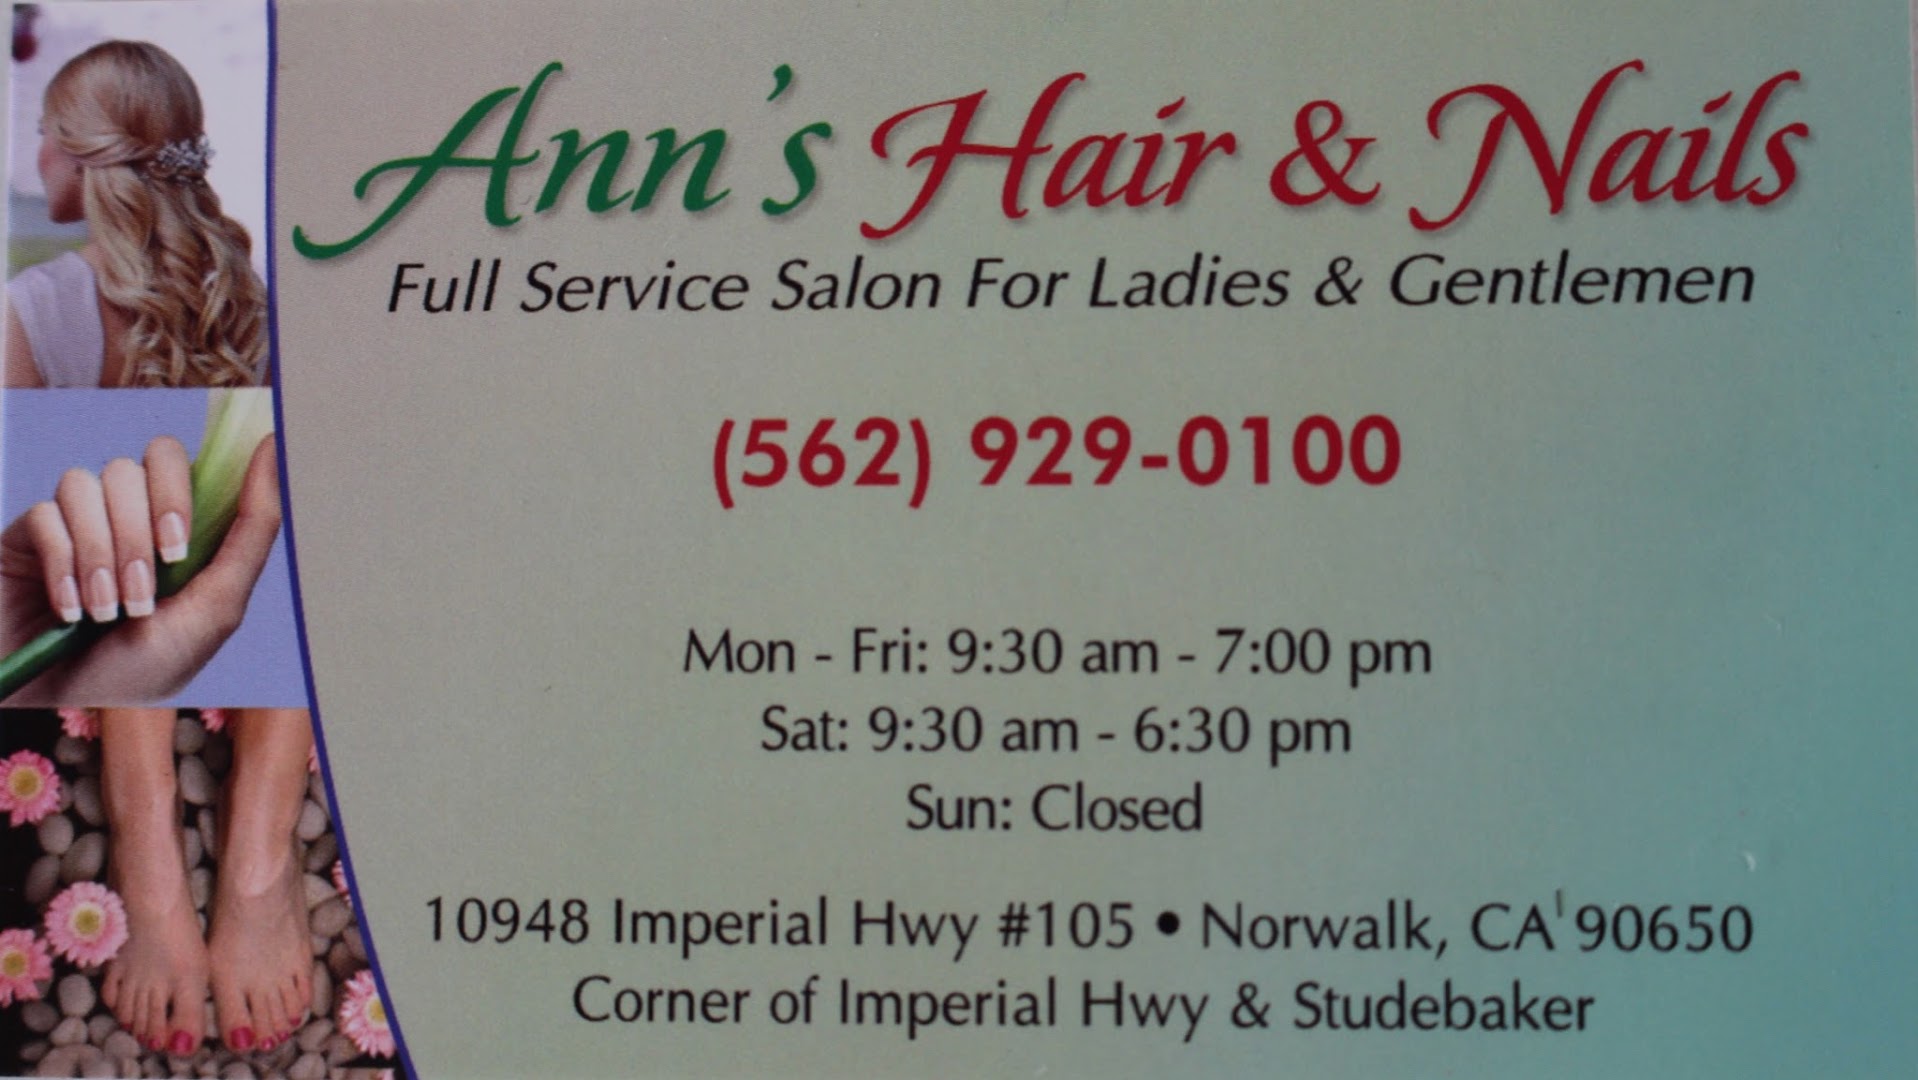 Ann's Hair & Nails Salon